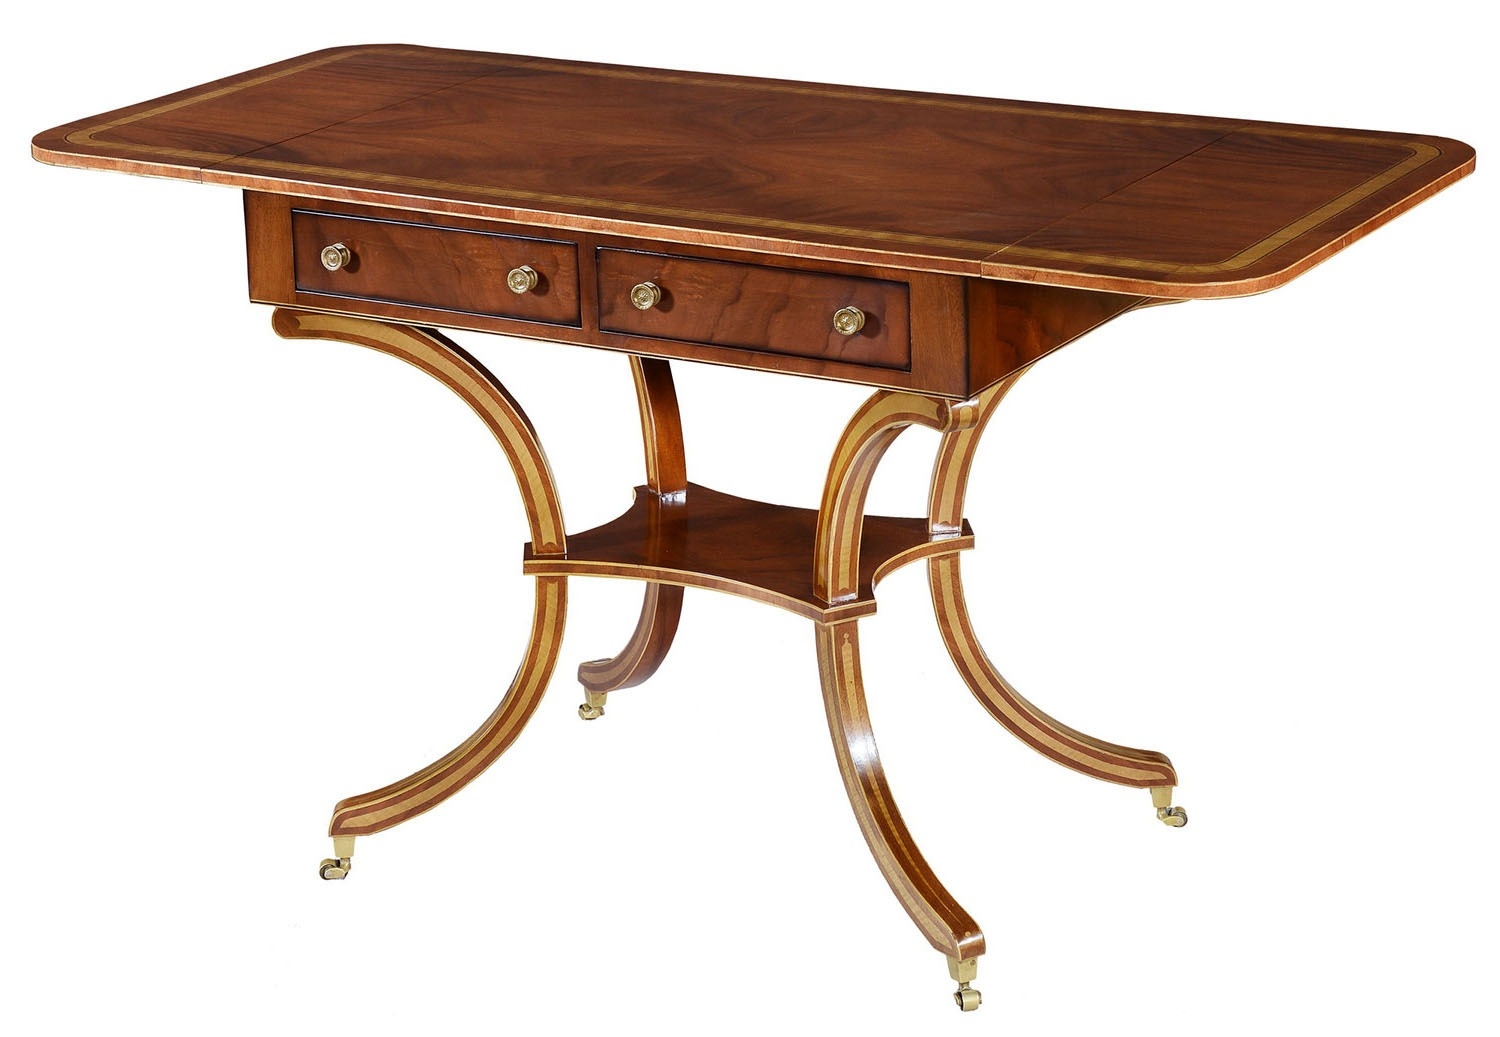 Sheraton style mahogany sofa table